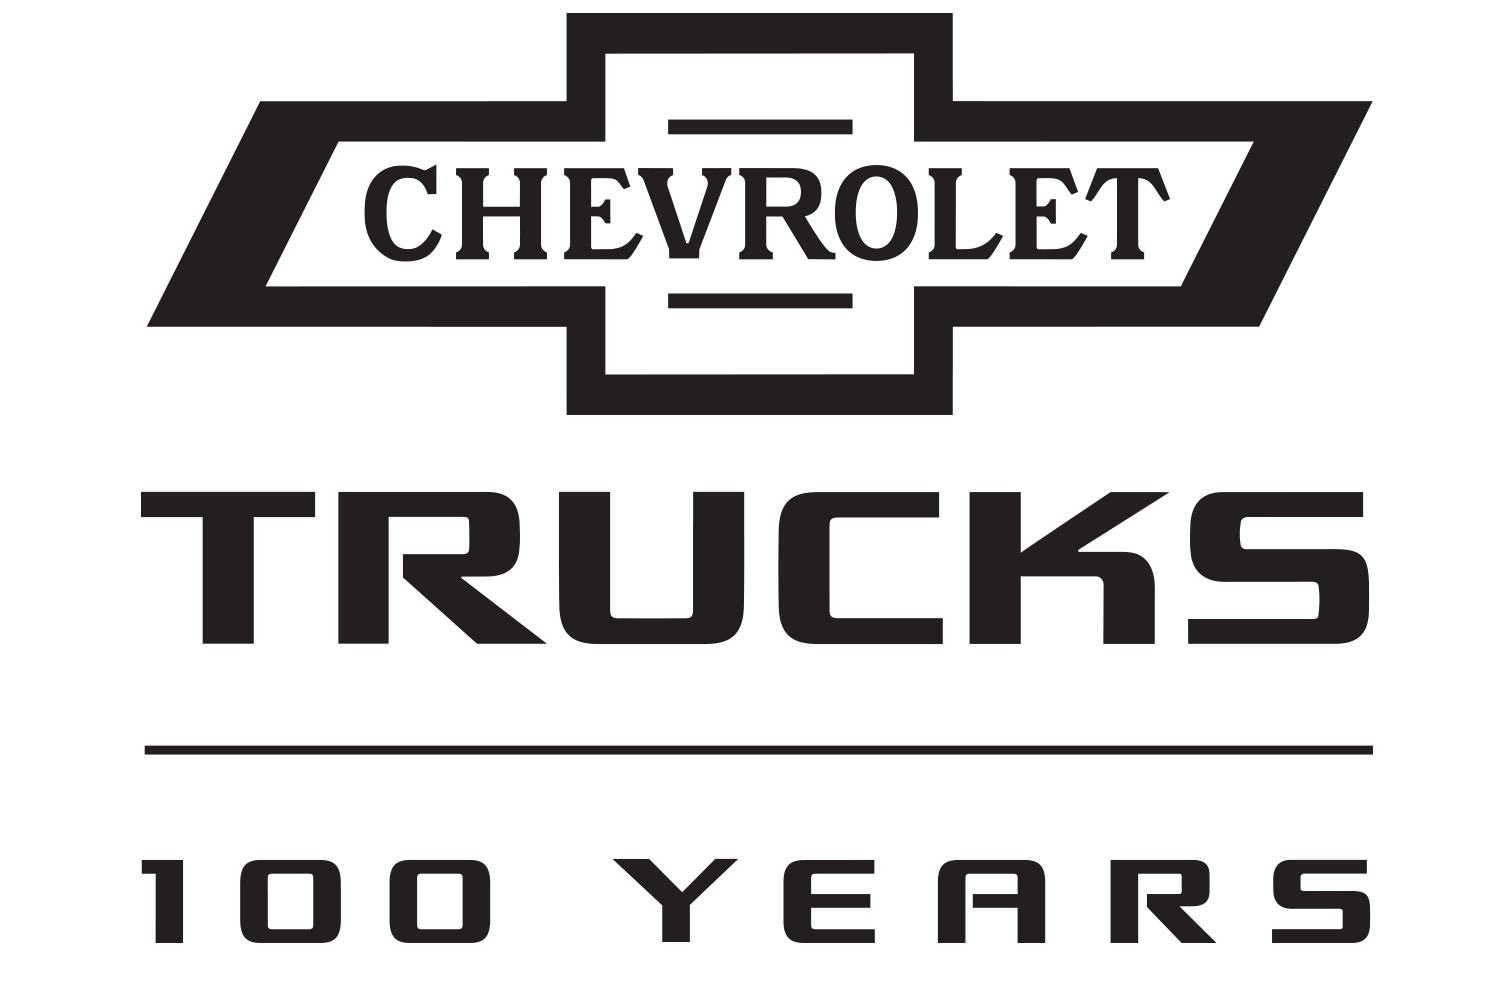 Chevrolet Truck Logo - Flemingsburg Kentucky Chevrolet Dealership | Cheap Chevrolet